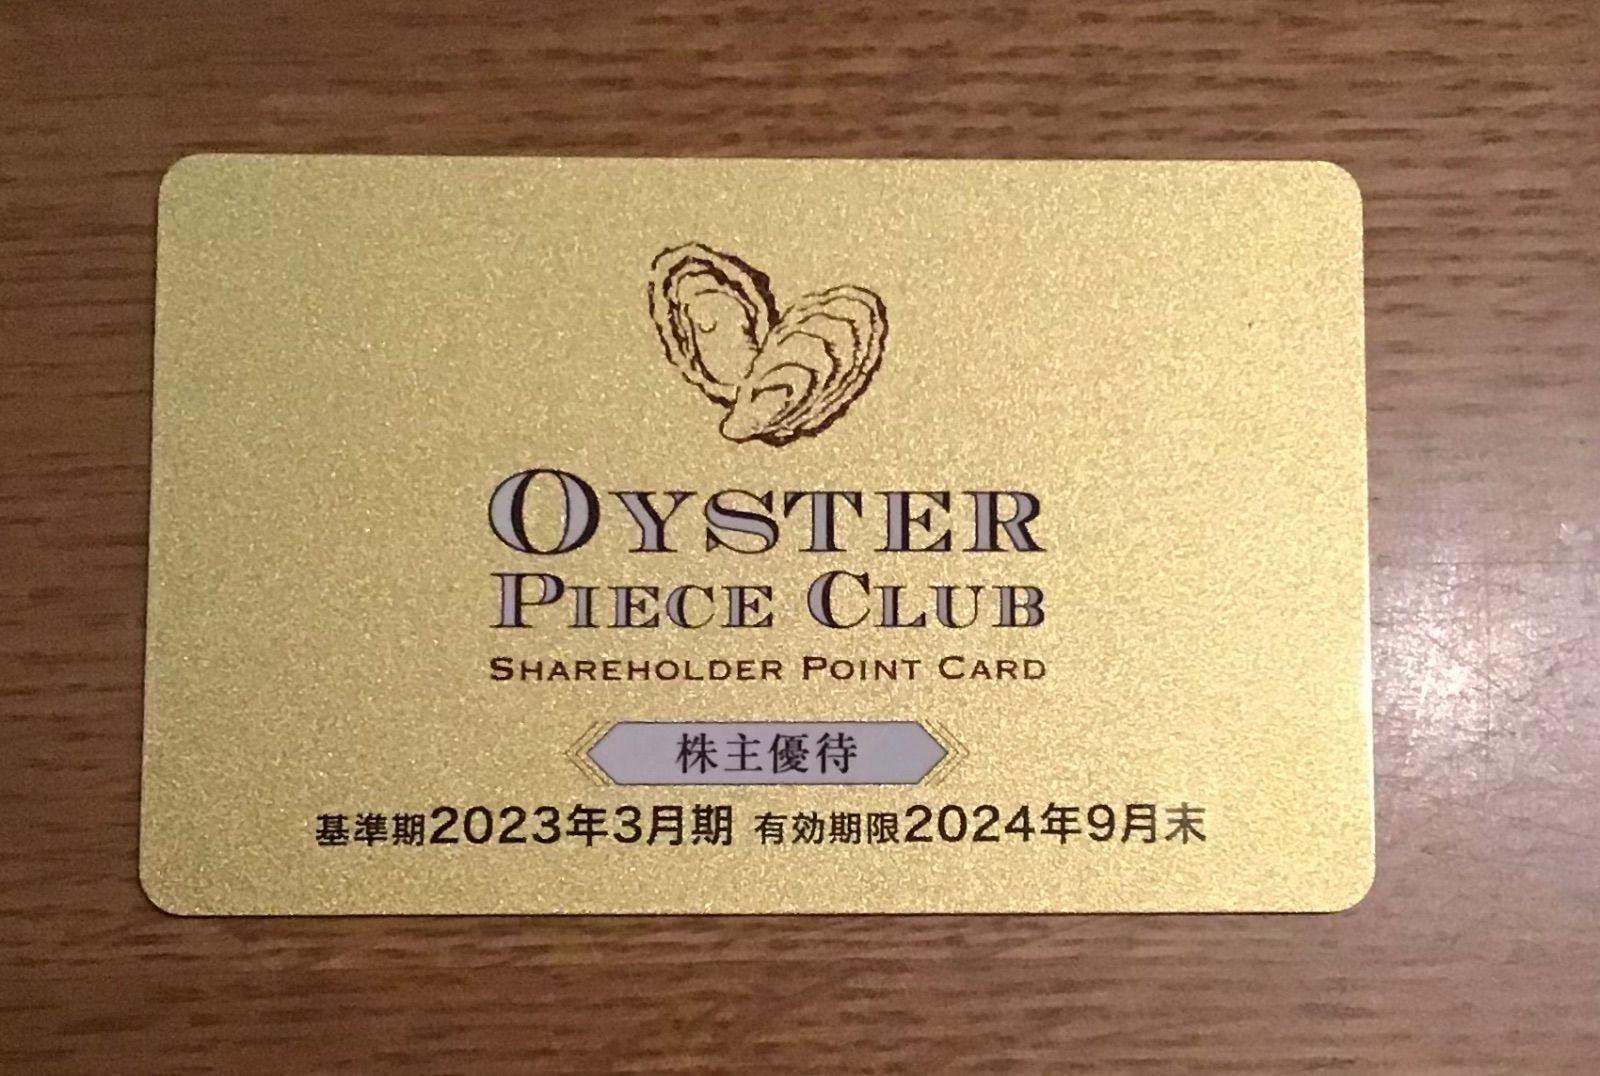 レストラン/食事券ゼネラルオイスター 株主優待カード 7500ポイント